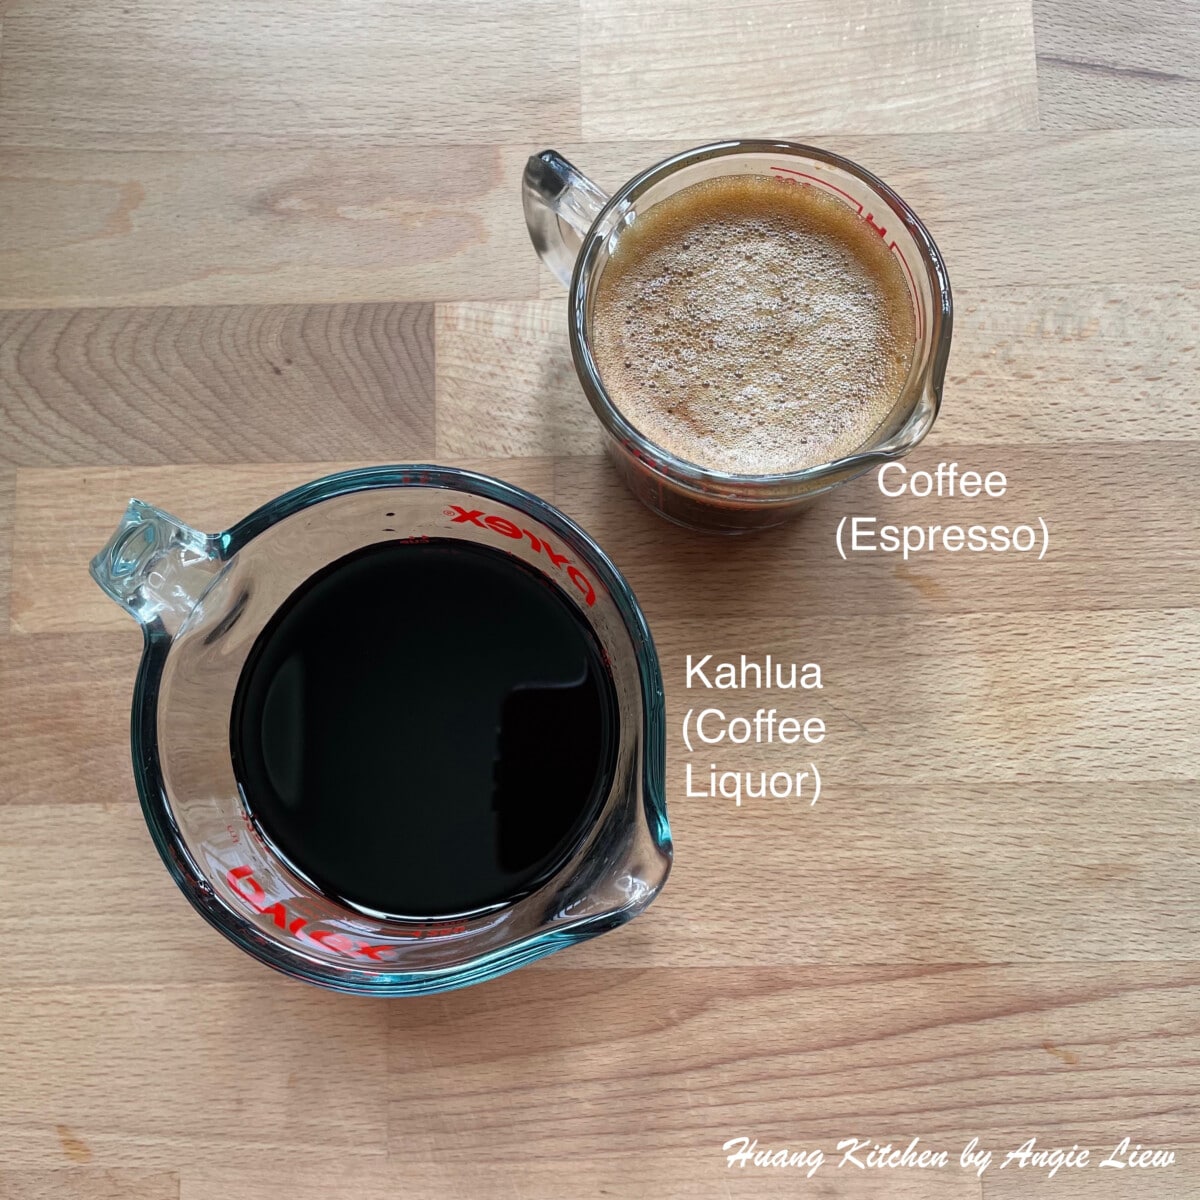 Easy Homemade Tiramisu Recipe by Huang Kitchen - Preparing coffee soaking liquid